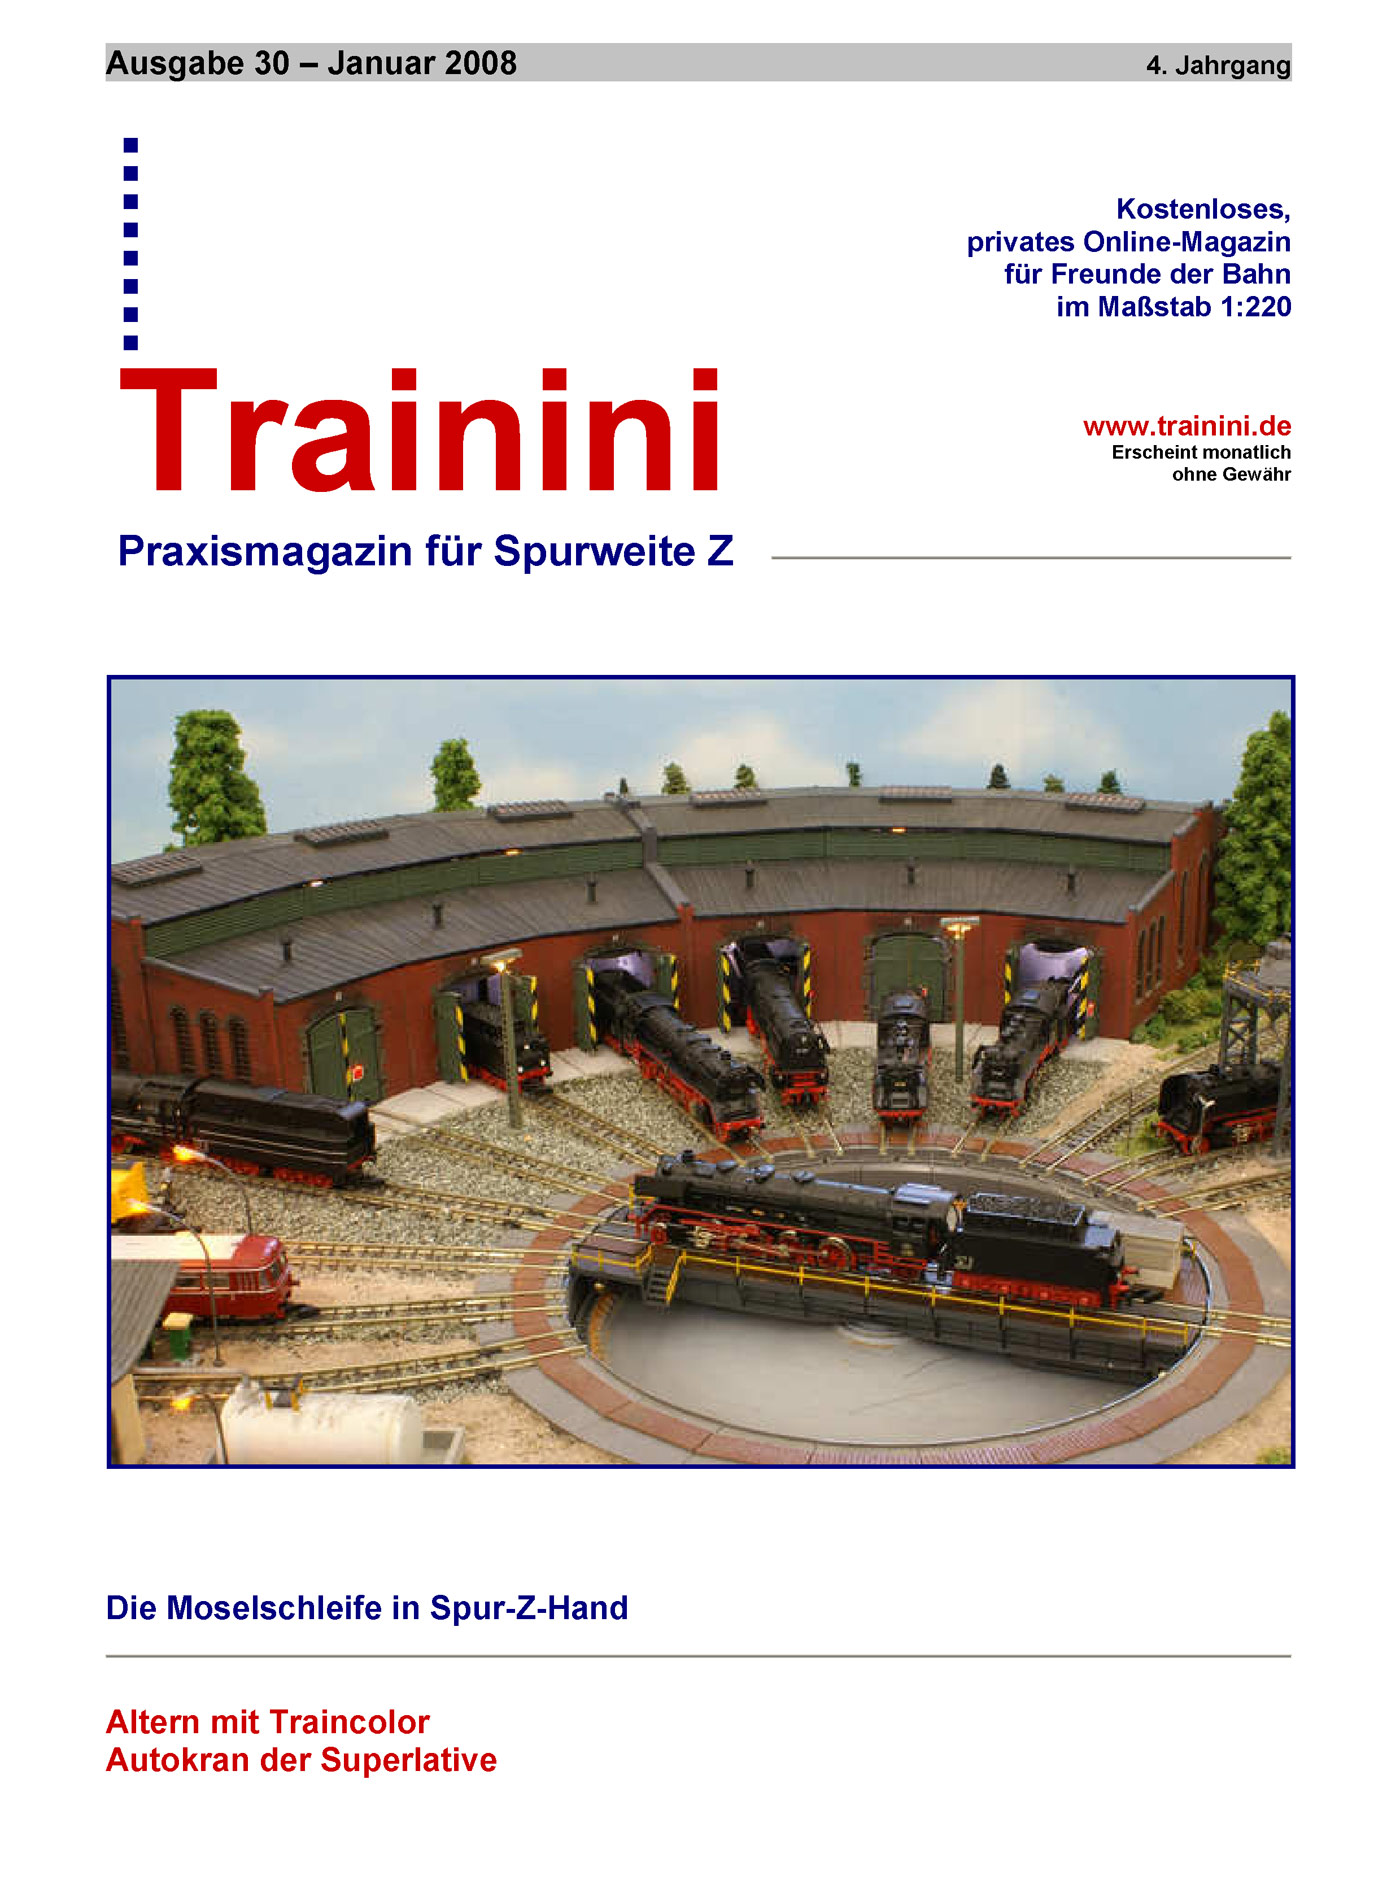 Trainini Ausgabe Januar 2008